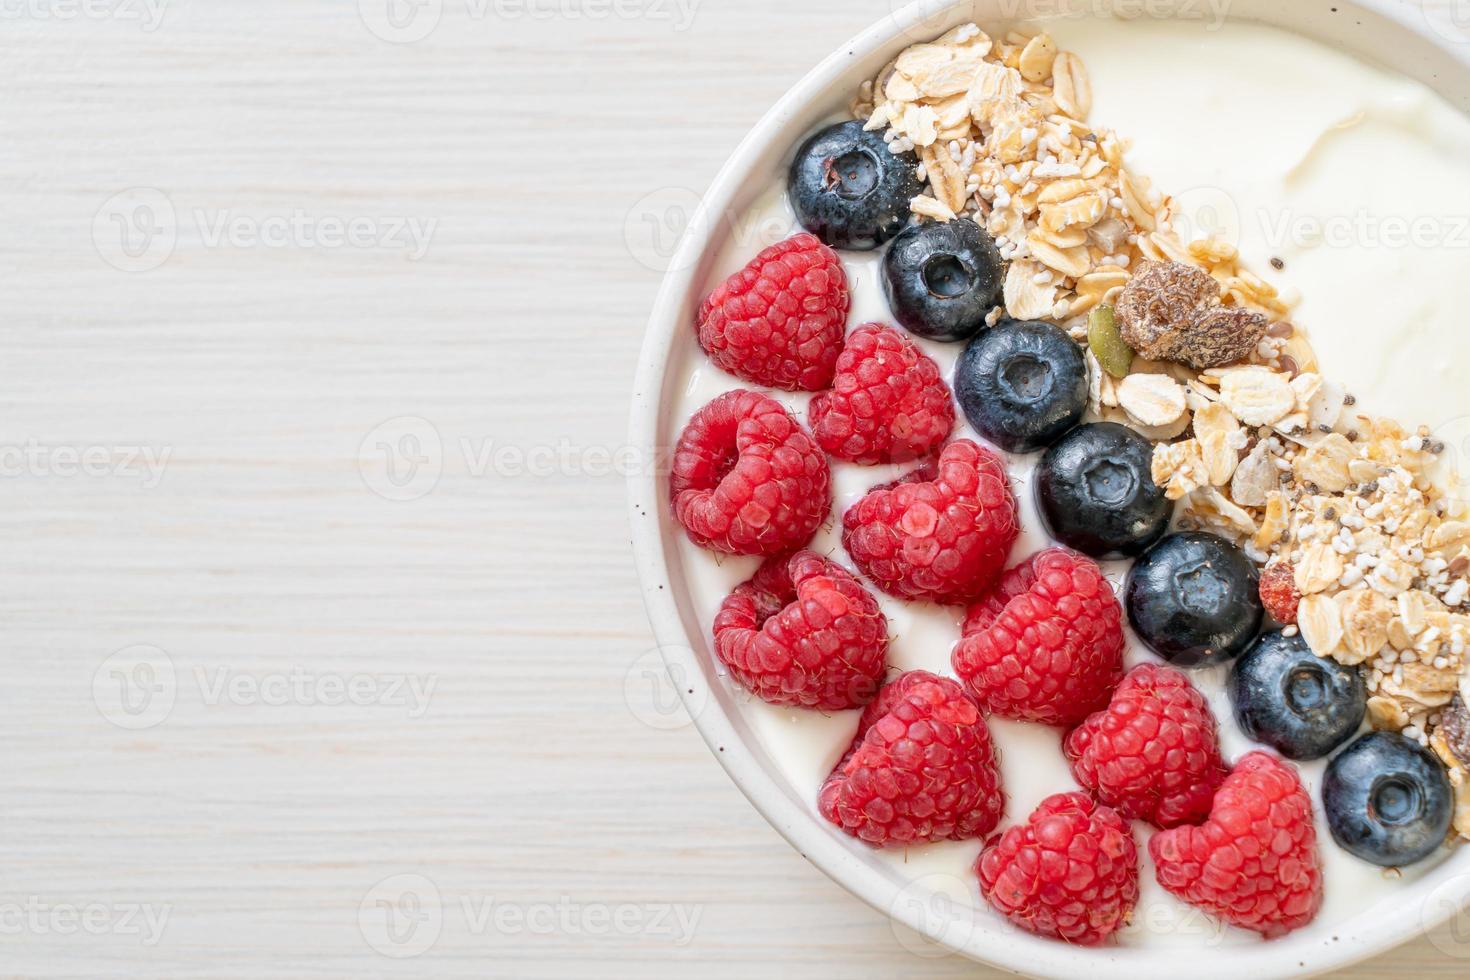 zelfgemaakte yoghurtkom met framboos, bosbes en granola - healthy food style foto